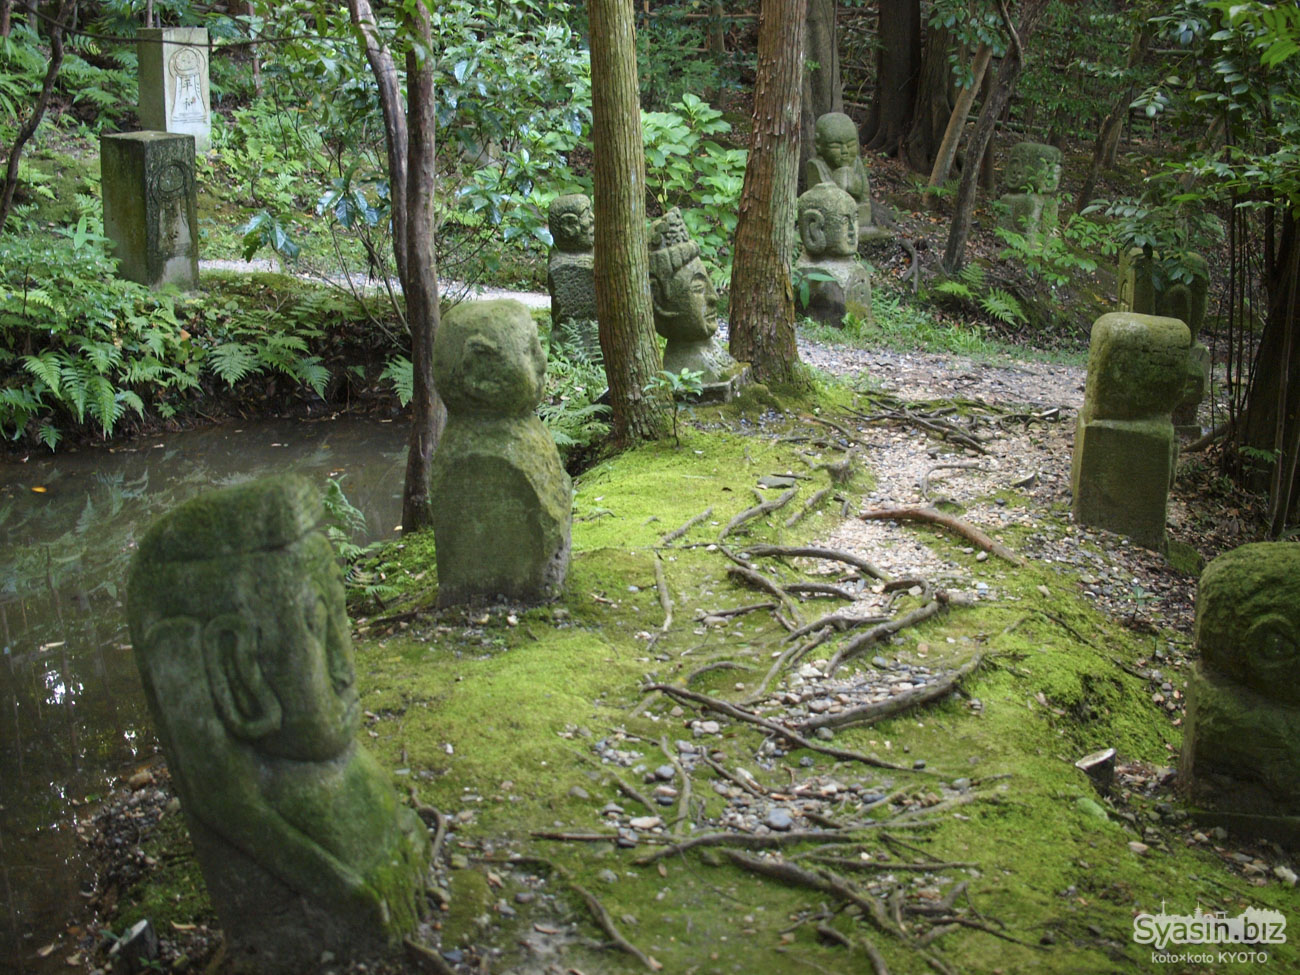 一休寺にある謎の羅漢像が並ぶ二十世紀の森